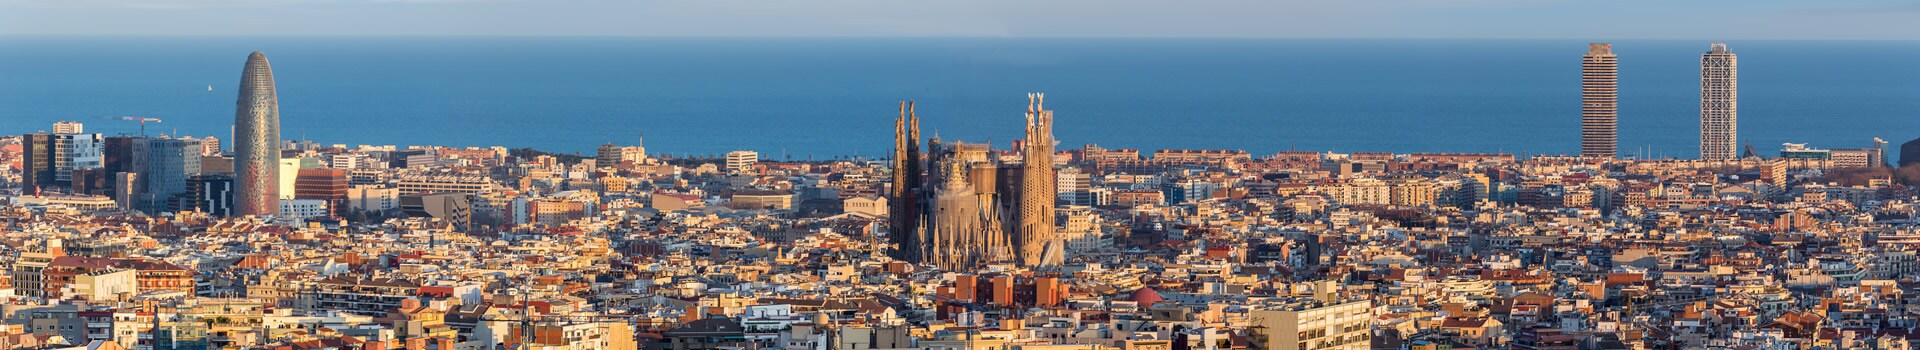 Almería - Barcelona